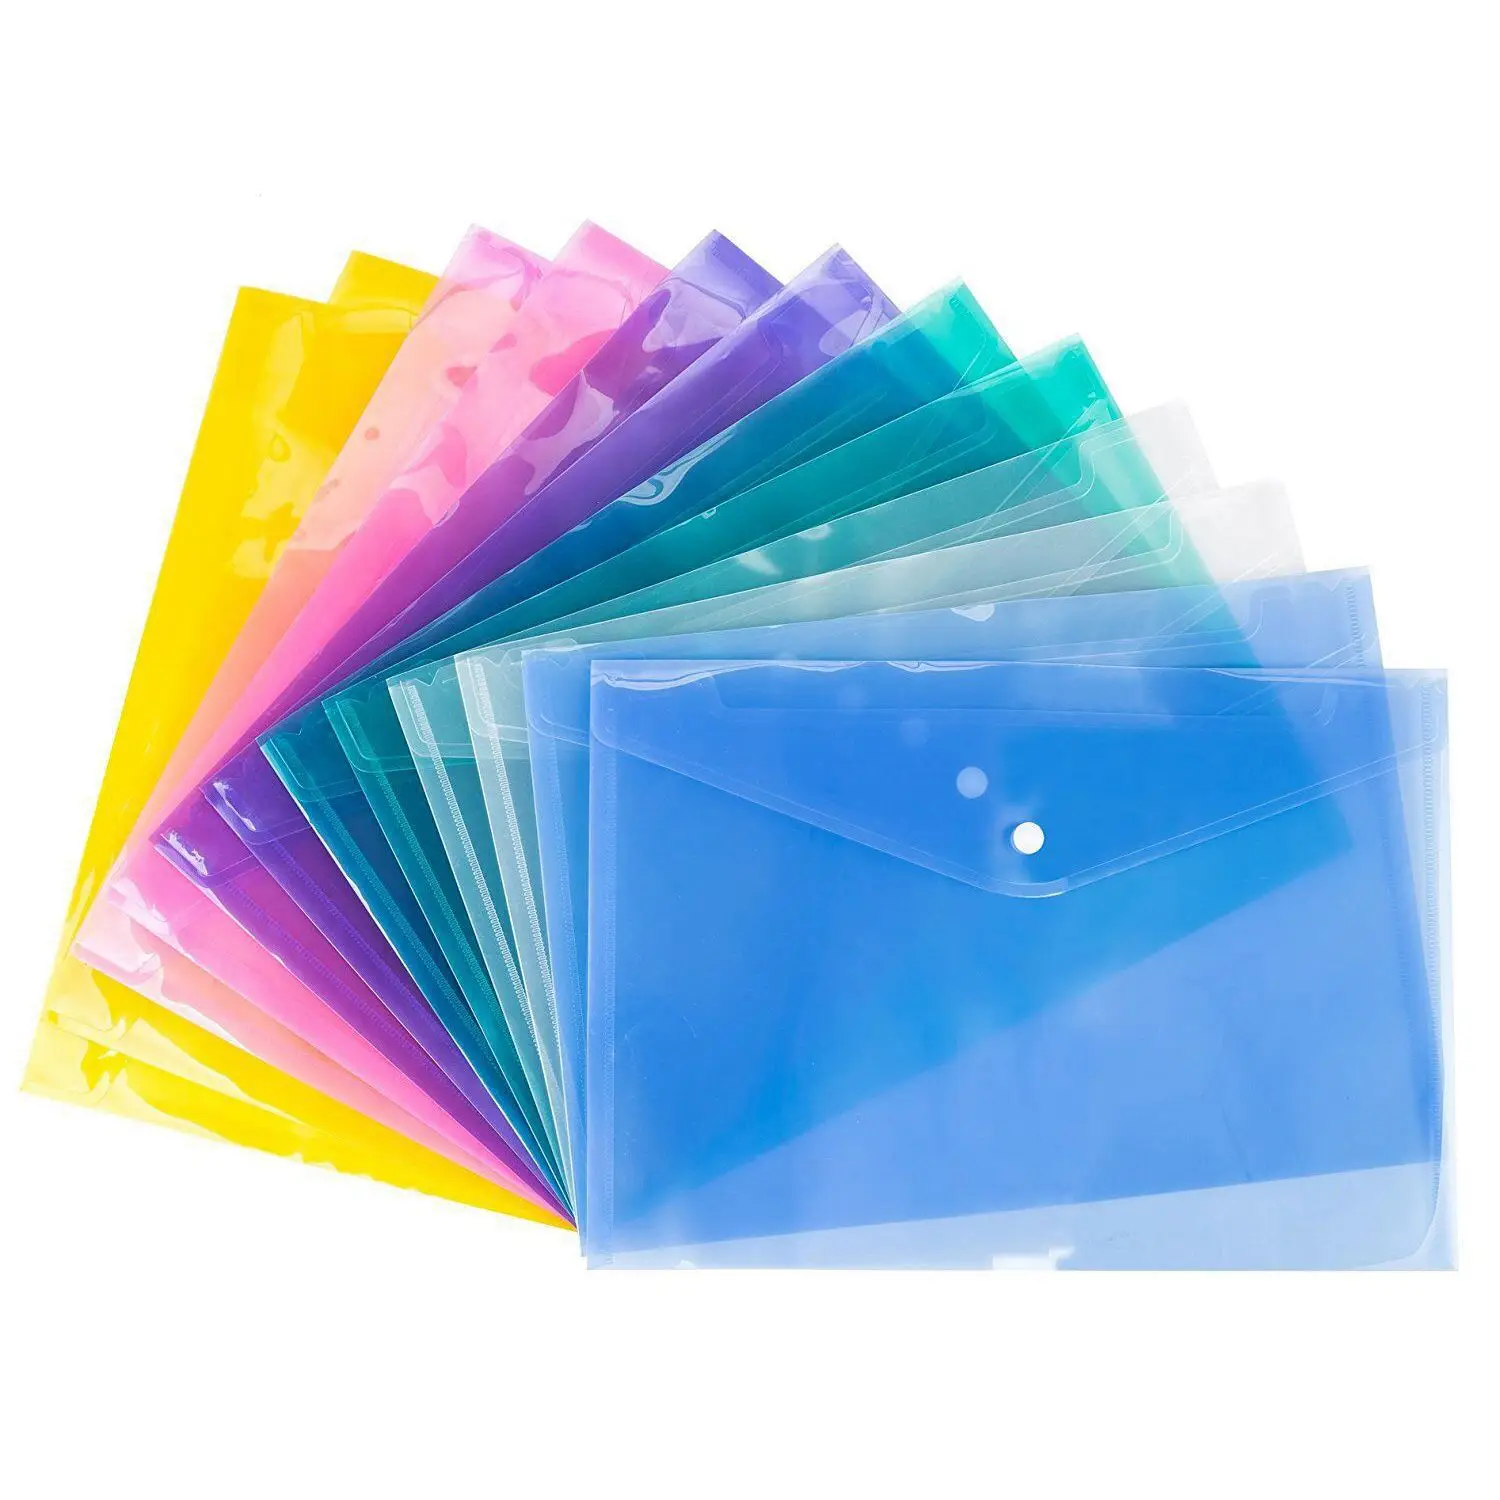 Новый A4 папки для бумаг Пластиковые Поппер папки Пряжка подача бумаги хранения, разные цвета 12 шт